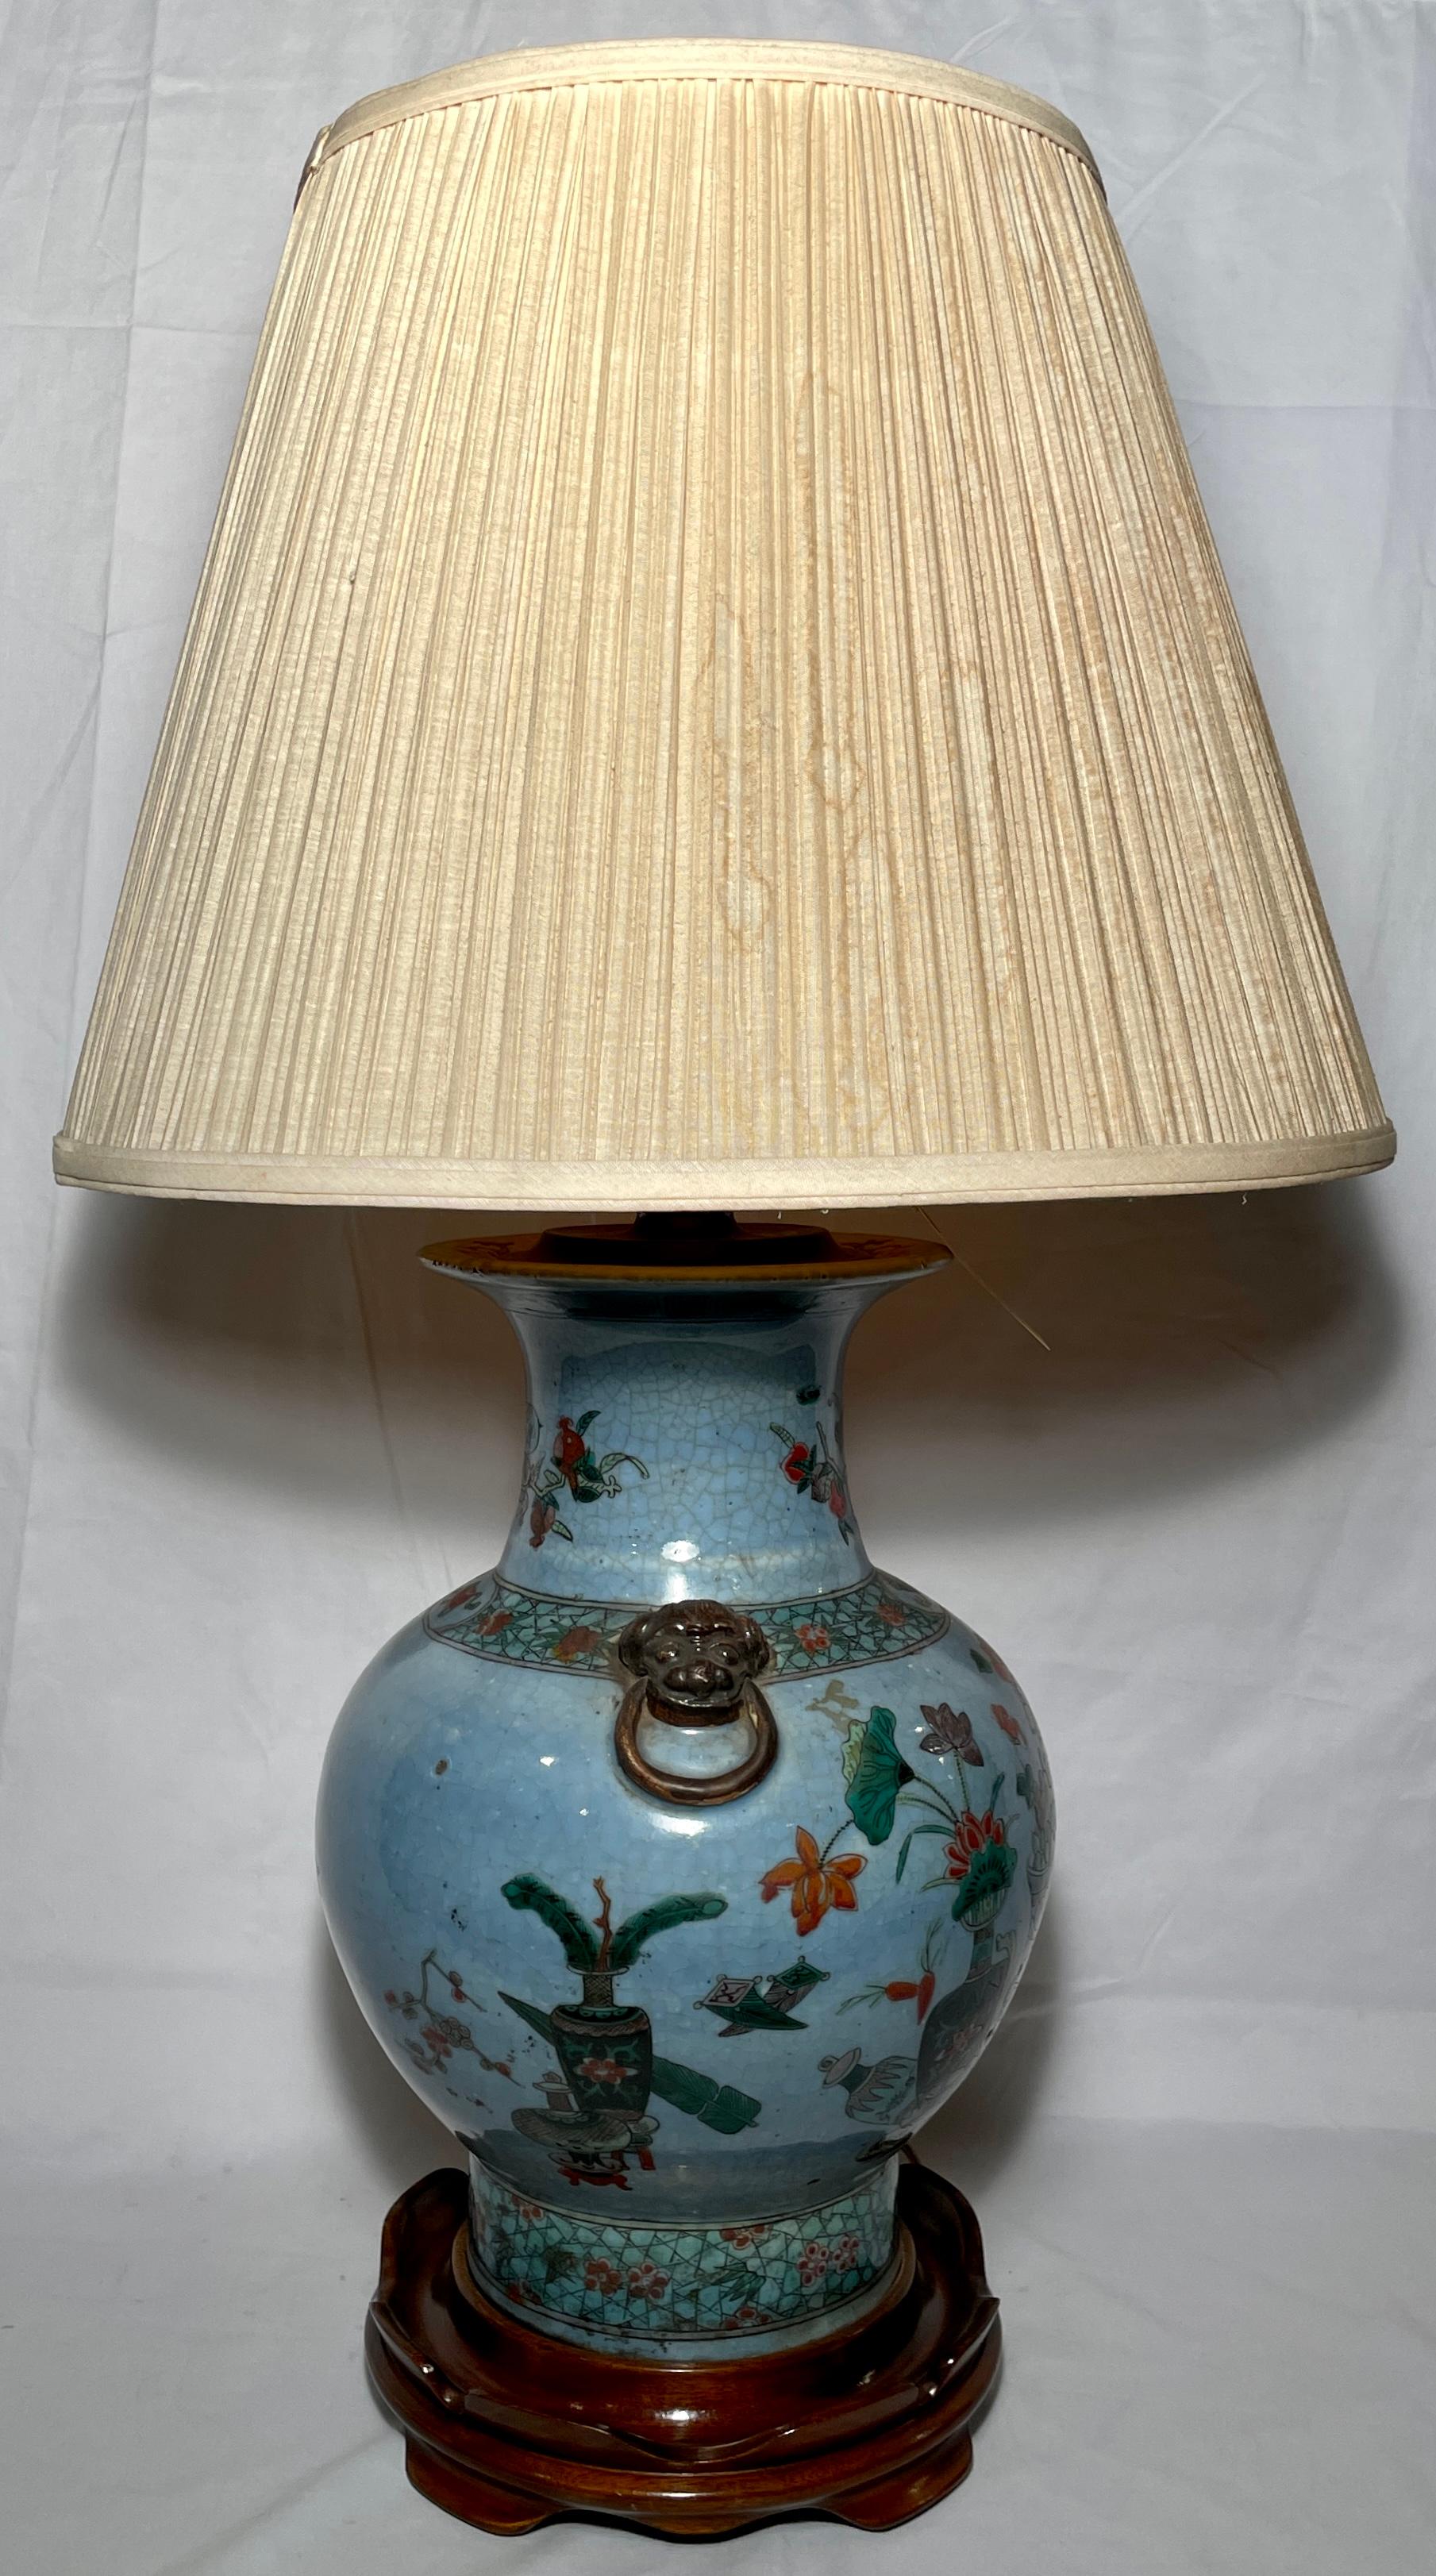 Ancien vase en porcelaine chinoise de la fin du 19e siècle qui a été converti en lampe sur une base en acajou fabriquée sur mesure. 
Mesures :
Abat-jour - 18,25 pouces de diamètre 
Corps - 10 pouces de diamètre 
Base - 9 pouces de diamètre.